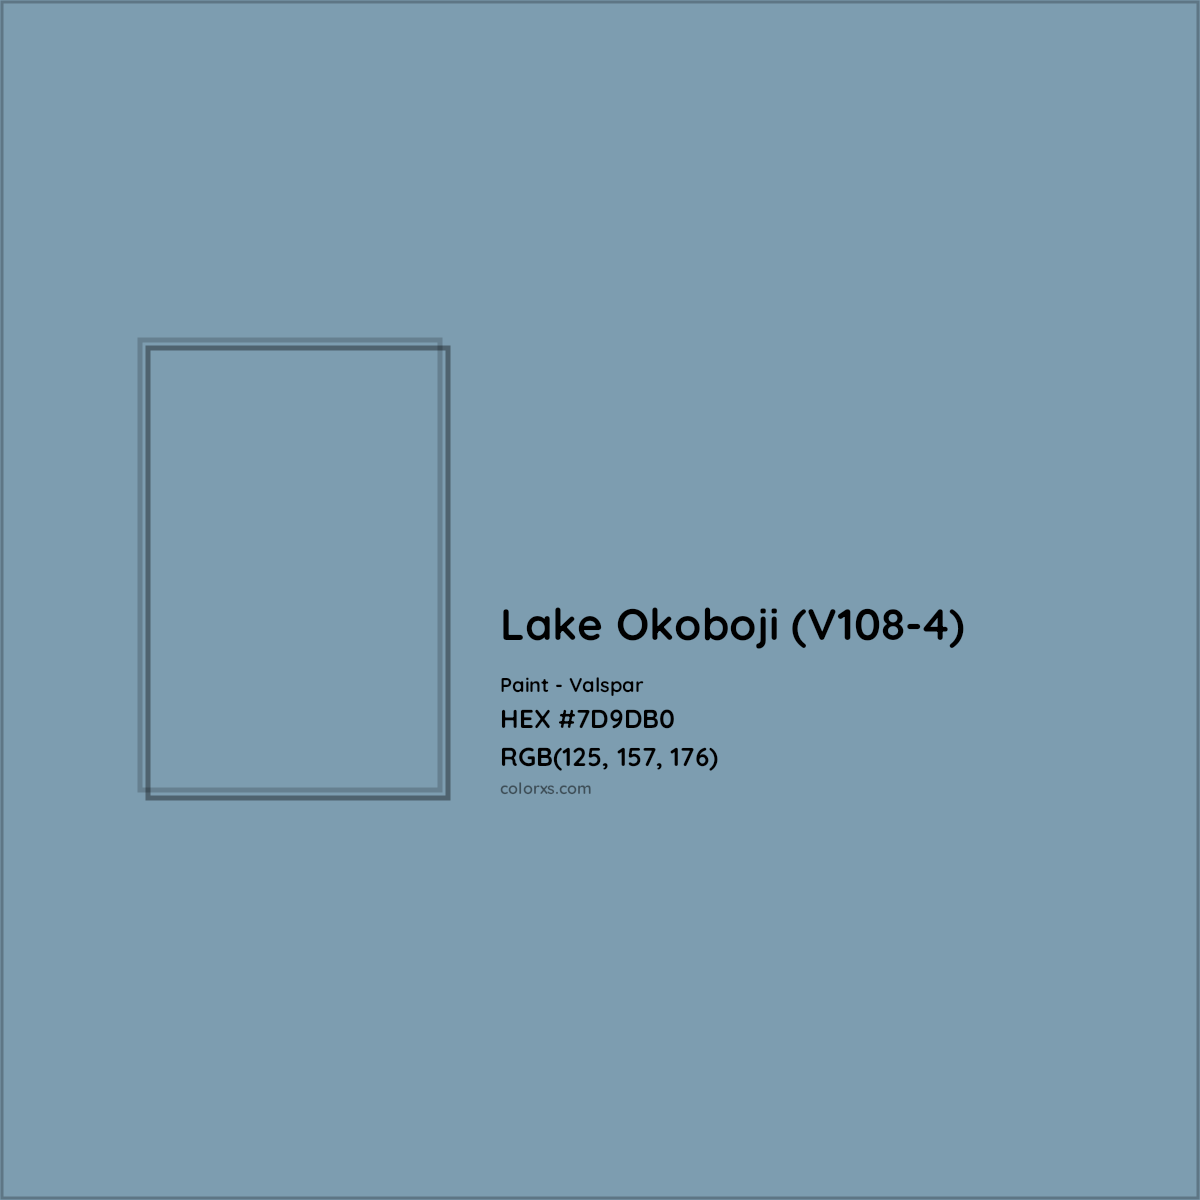 HEX #7D9DB0 Lake Okoboji (V108-4) Paint Valspar - Color Code